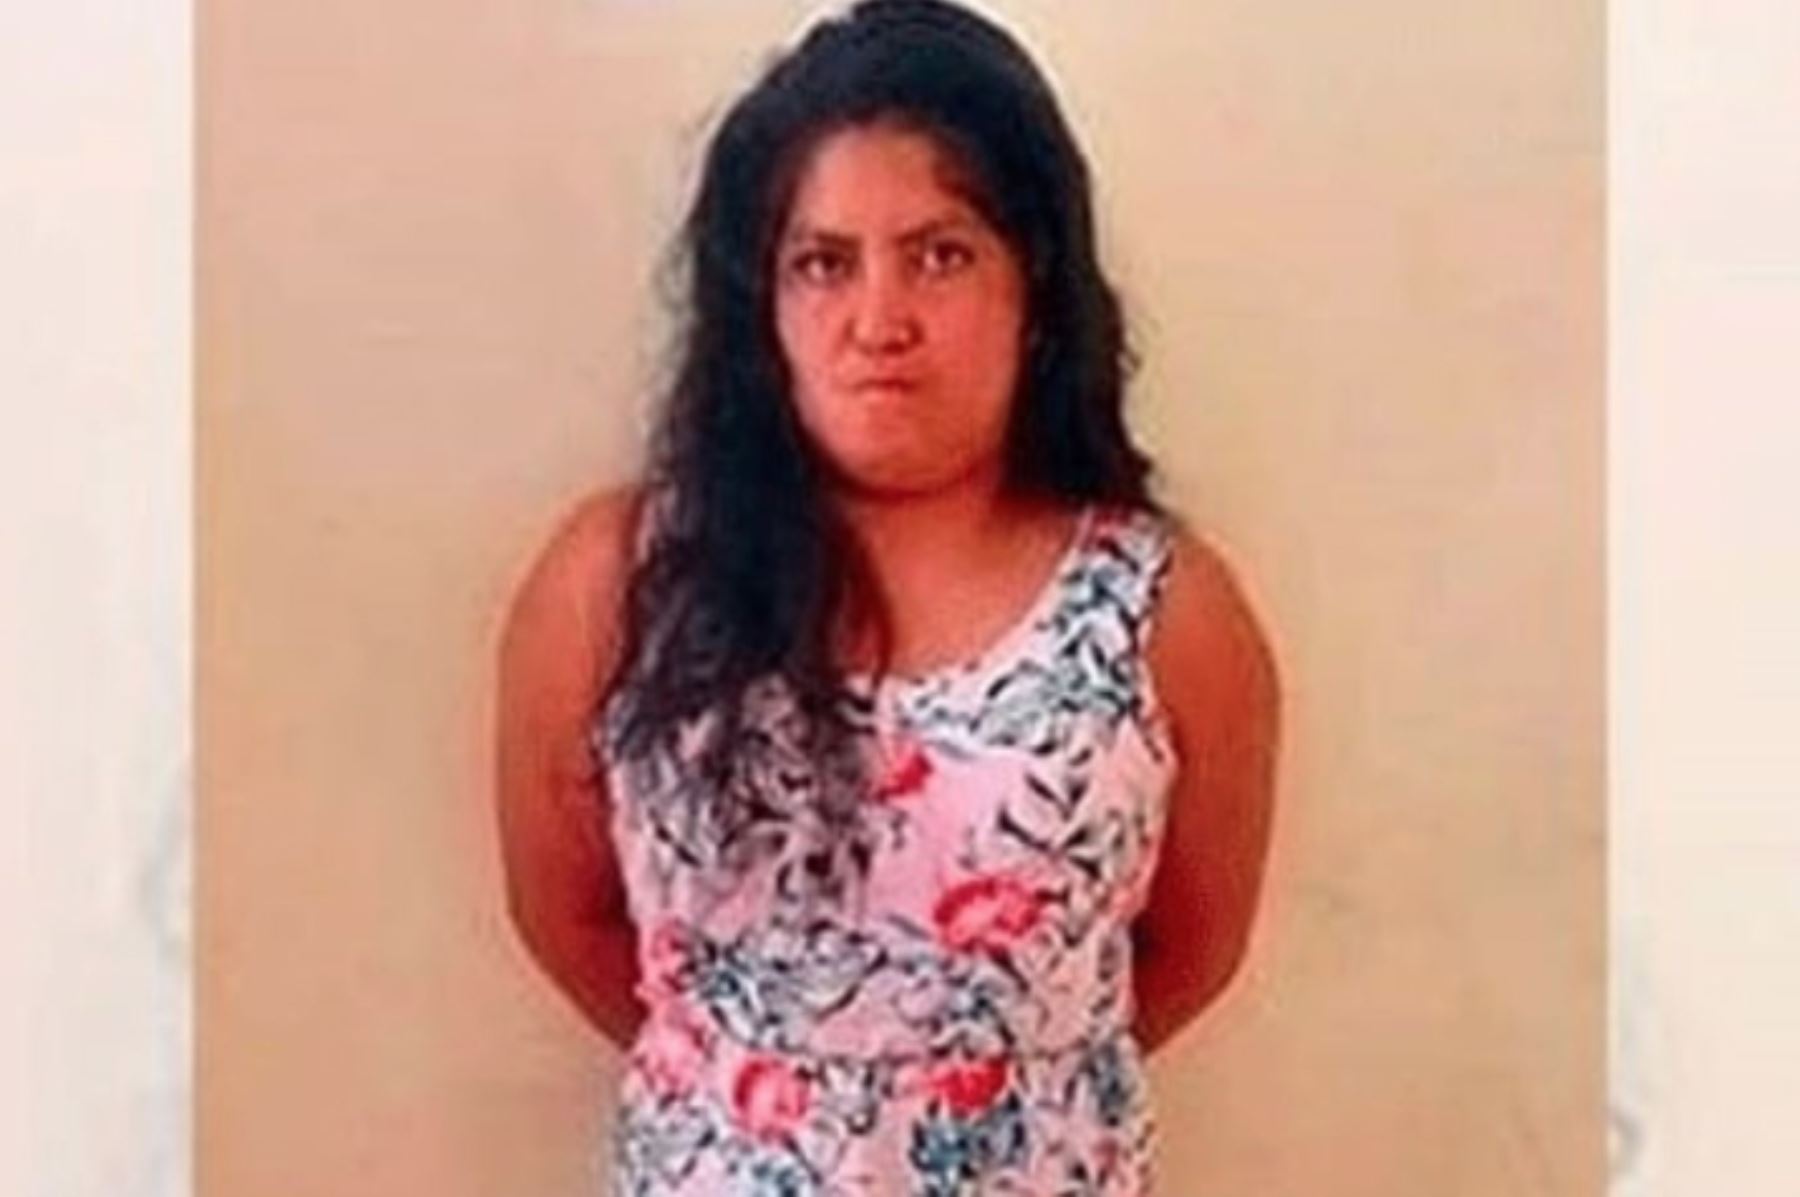 Juzgado de la Corte de La Libertad ordenó siete meses de prisión preventiva para mujer que agredió a policías en el distrito de Florencia de Mora, en Trujillo. ANDINA/Difusión